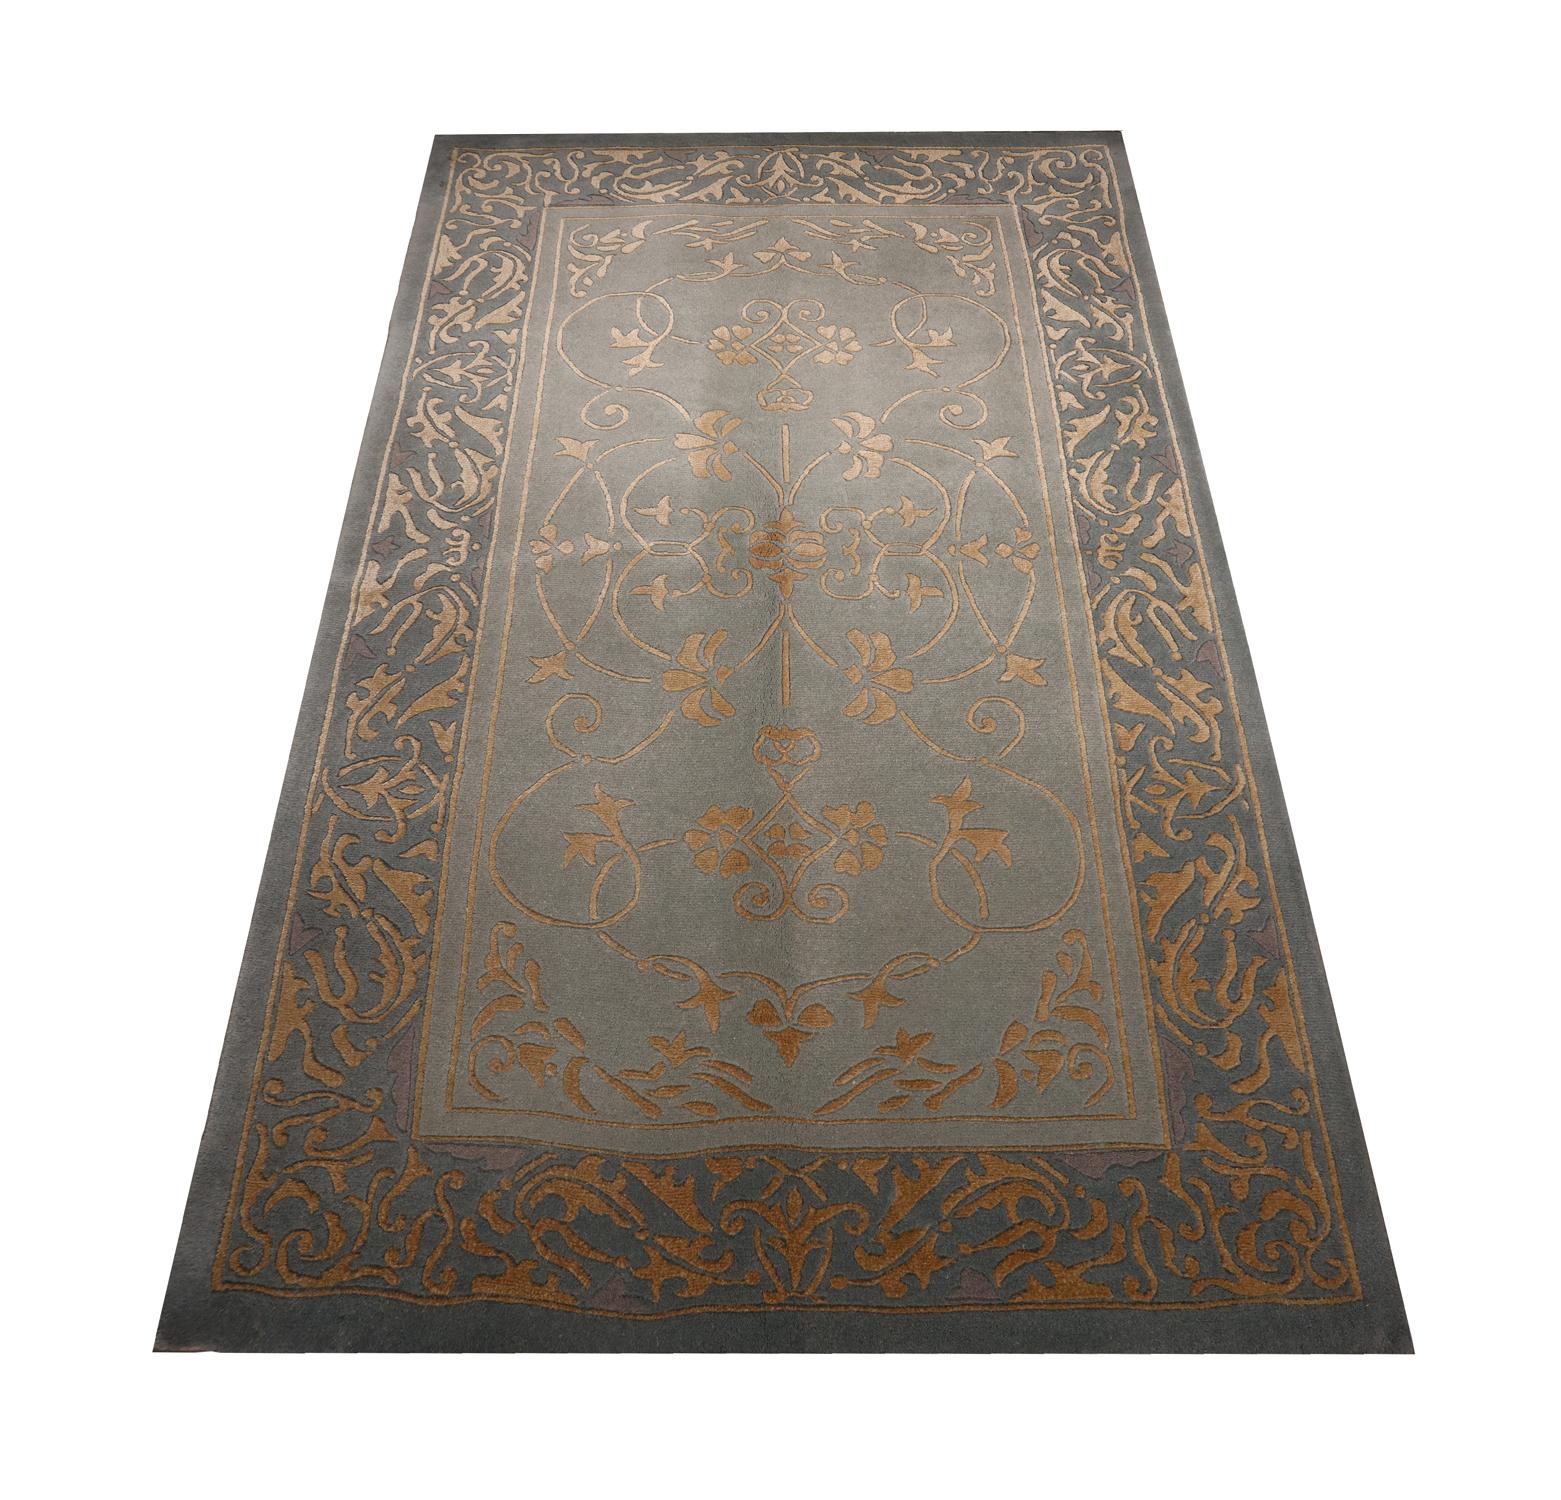 Ce tapis en soie fine a été tissé à la main en Inde au début du 21e siècle. Le motif a été tissé sur un fond gris subtil avec des accents dorés, formant un design symétrique élégant. Ce tapis vintage a été tissé à la perfection et s'intègre